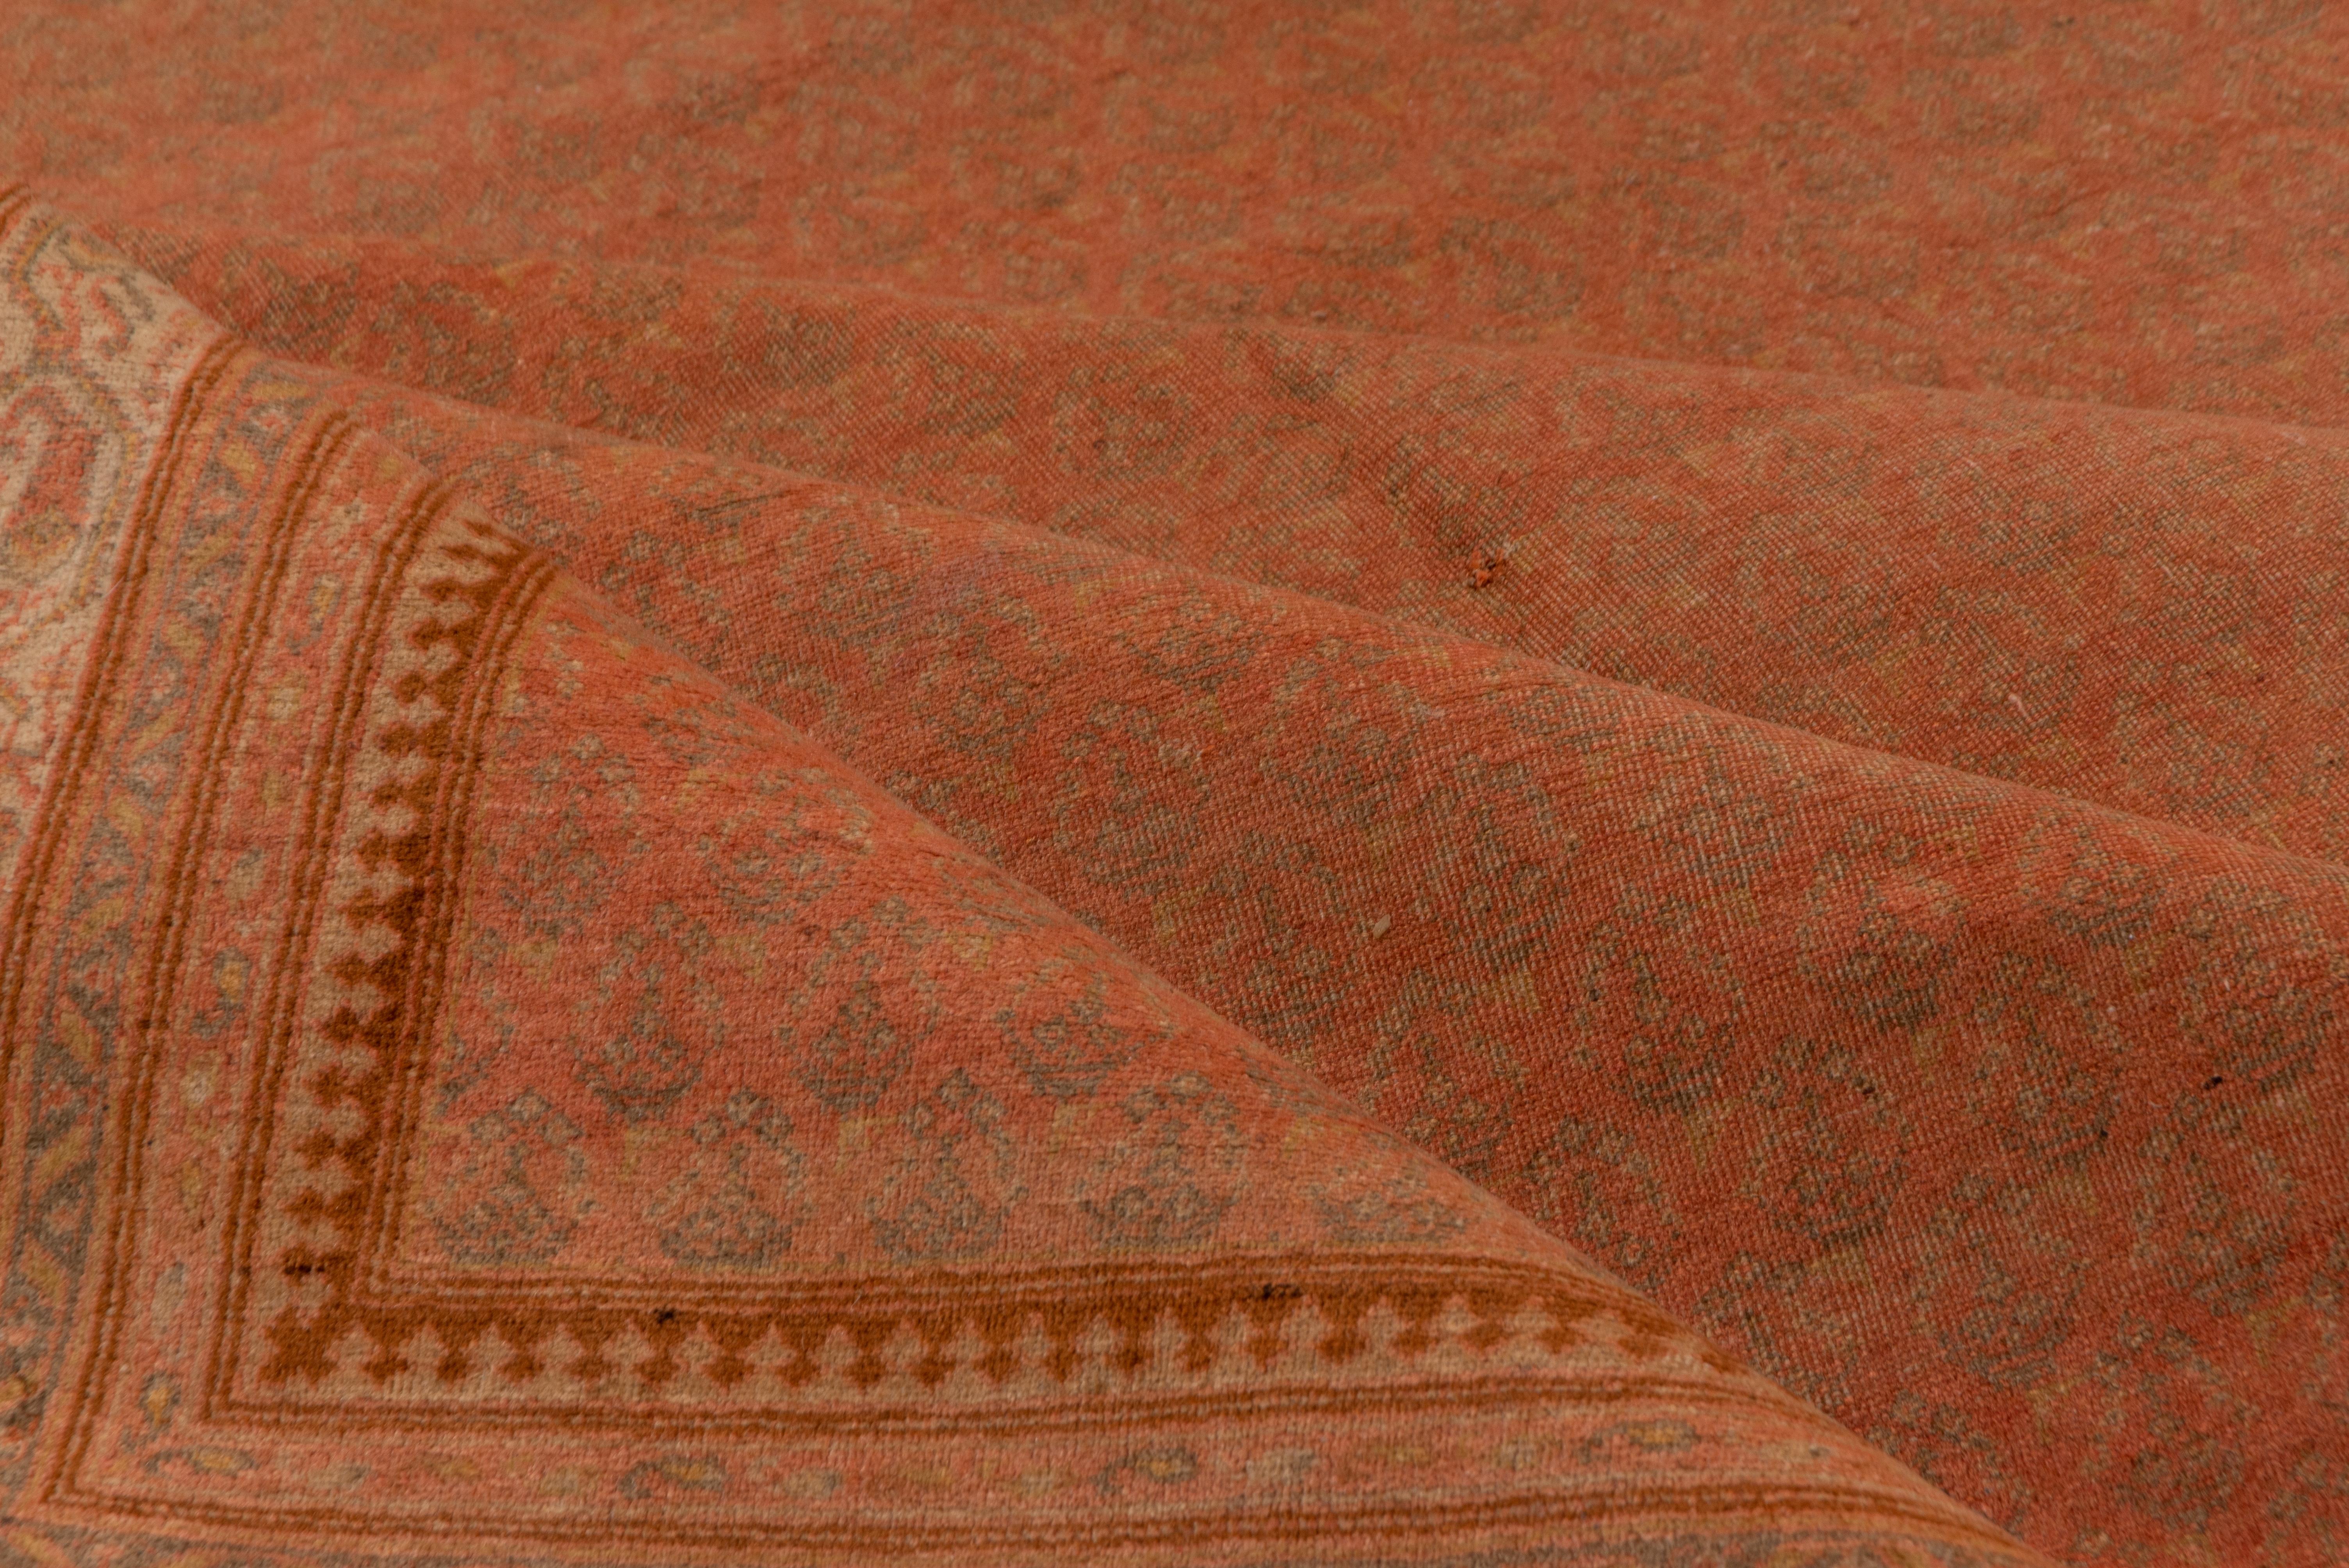 20th Century Antique Saraband Design Carpet, Orange Tones, Indian Origin, circa 1920s For Sale